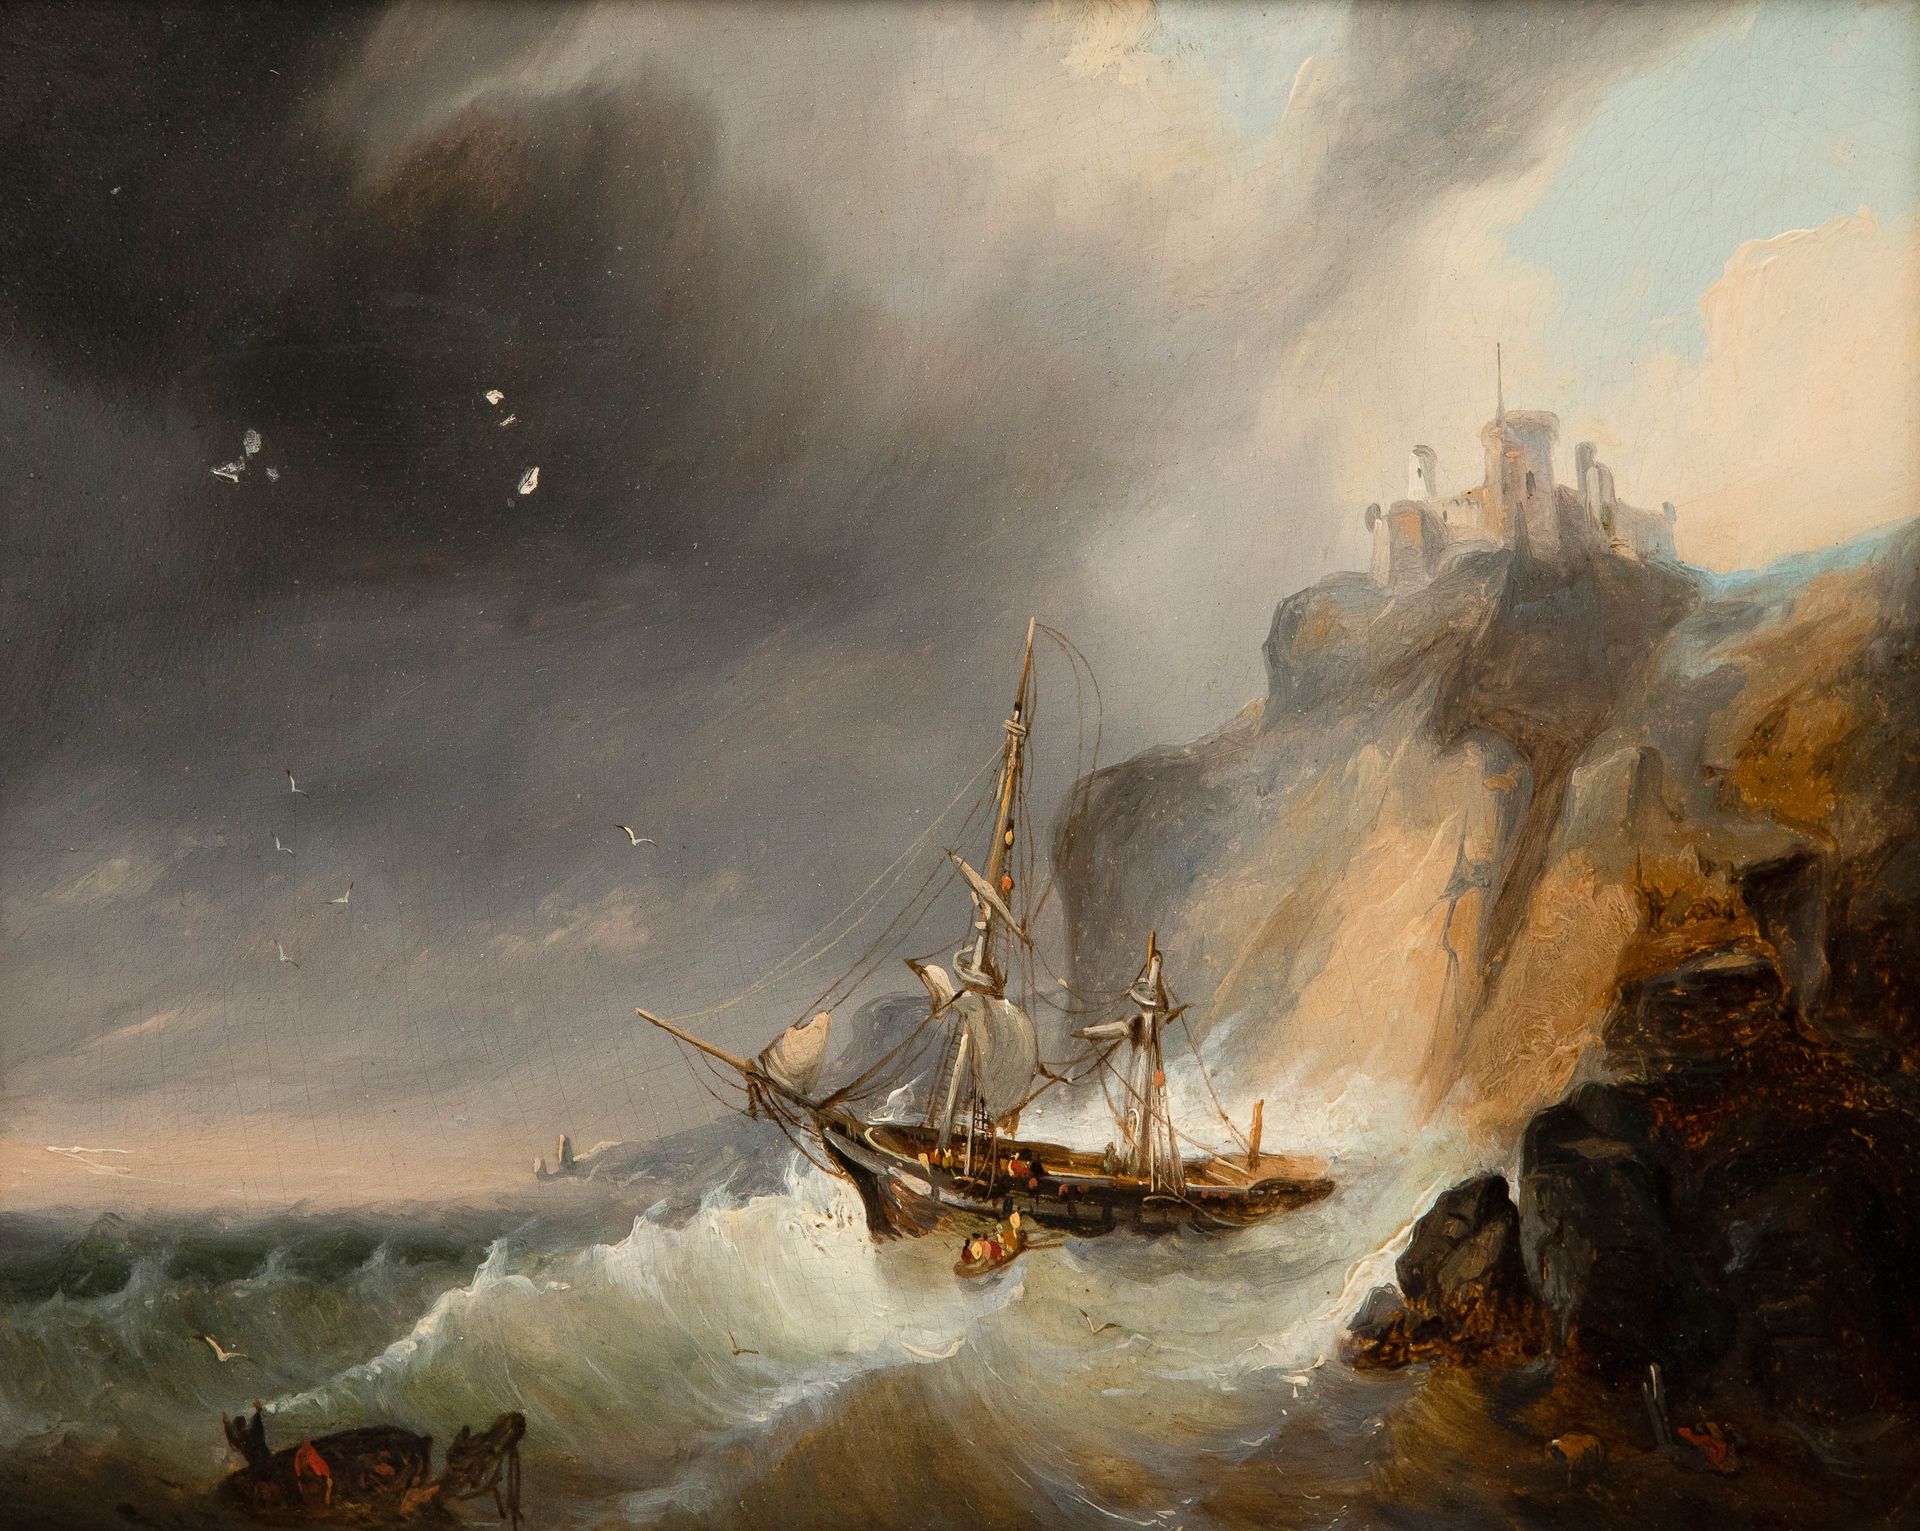 WIJNANDUS JOHANNES NUYEN (1813-1839) 船难。

小组。

左上角油漆脱落。

19.5 x 24厘米（49 x 54厘米）。